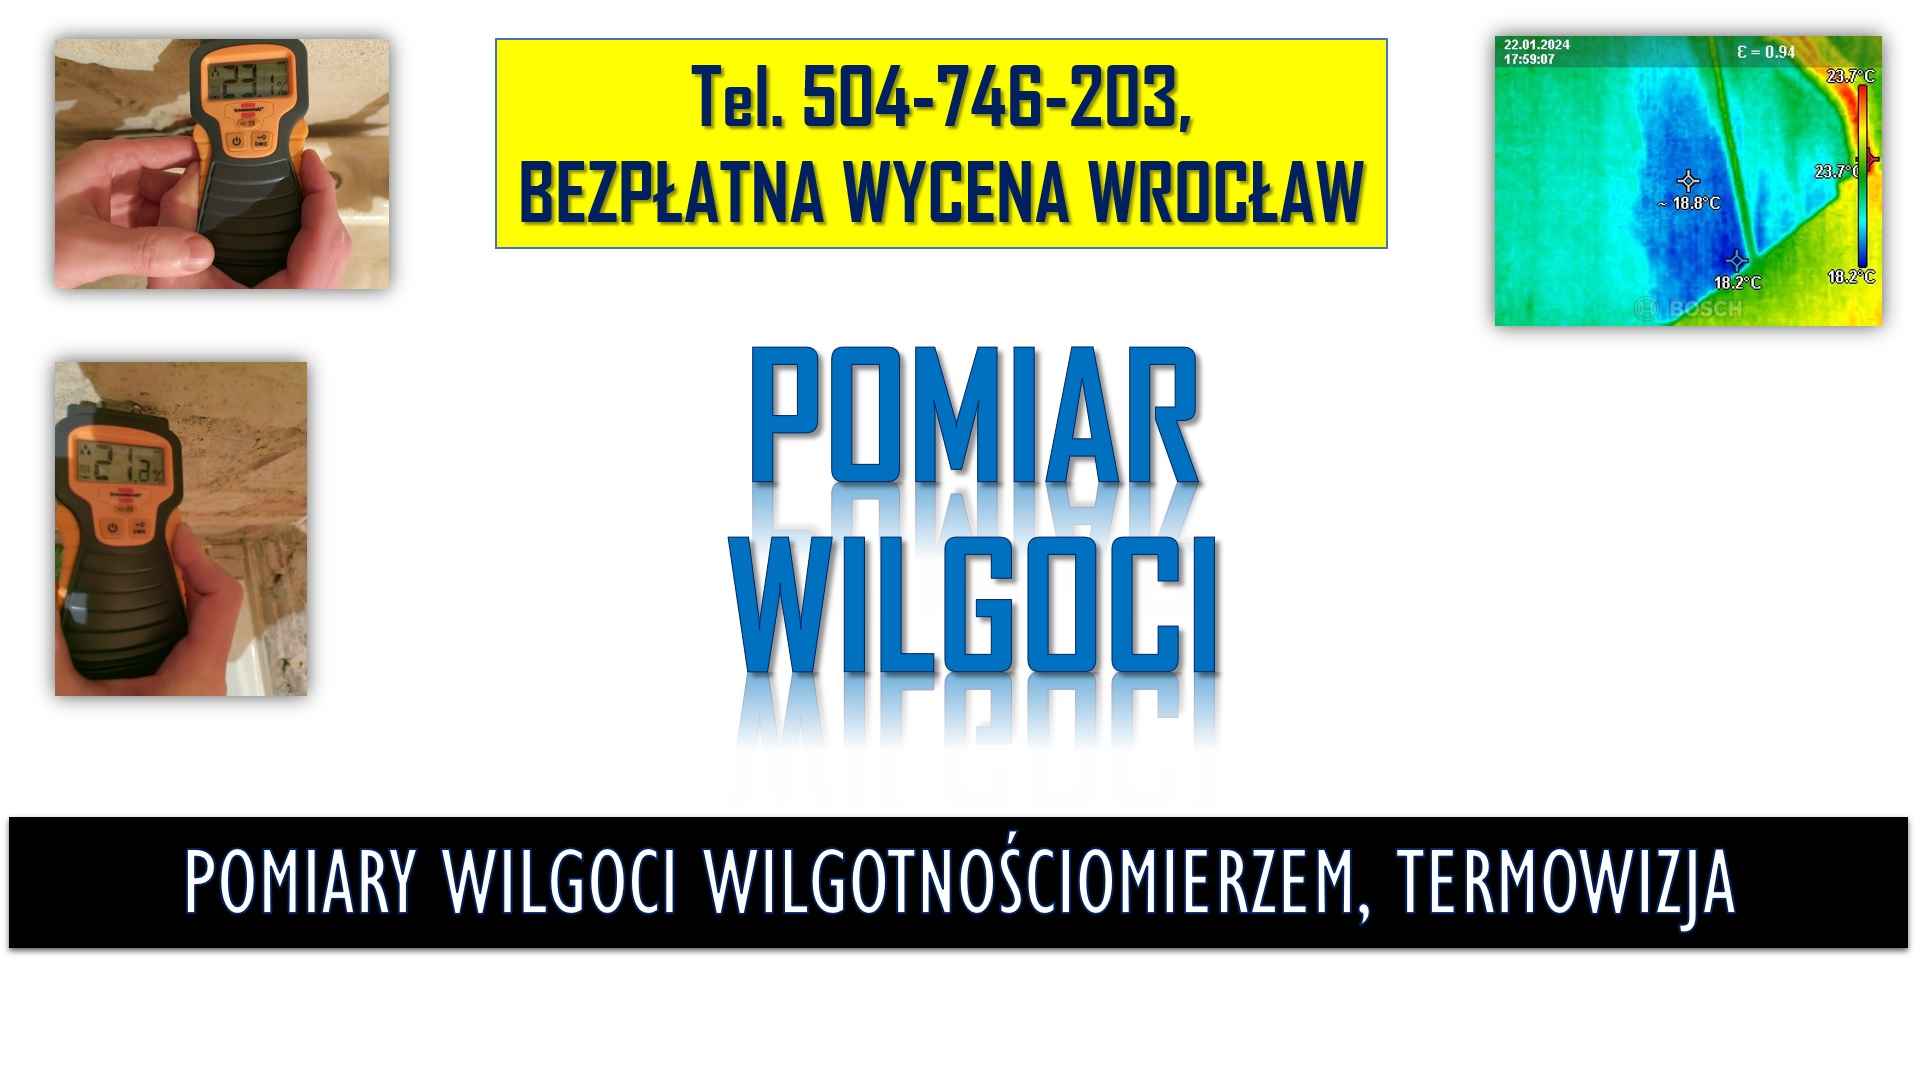 Pomiar wilgotnościomierzem, Wrocław, t.504746203. Wilgotności ściany. Psie Pole - zdjęcie 1